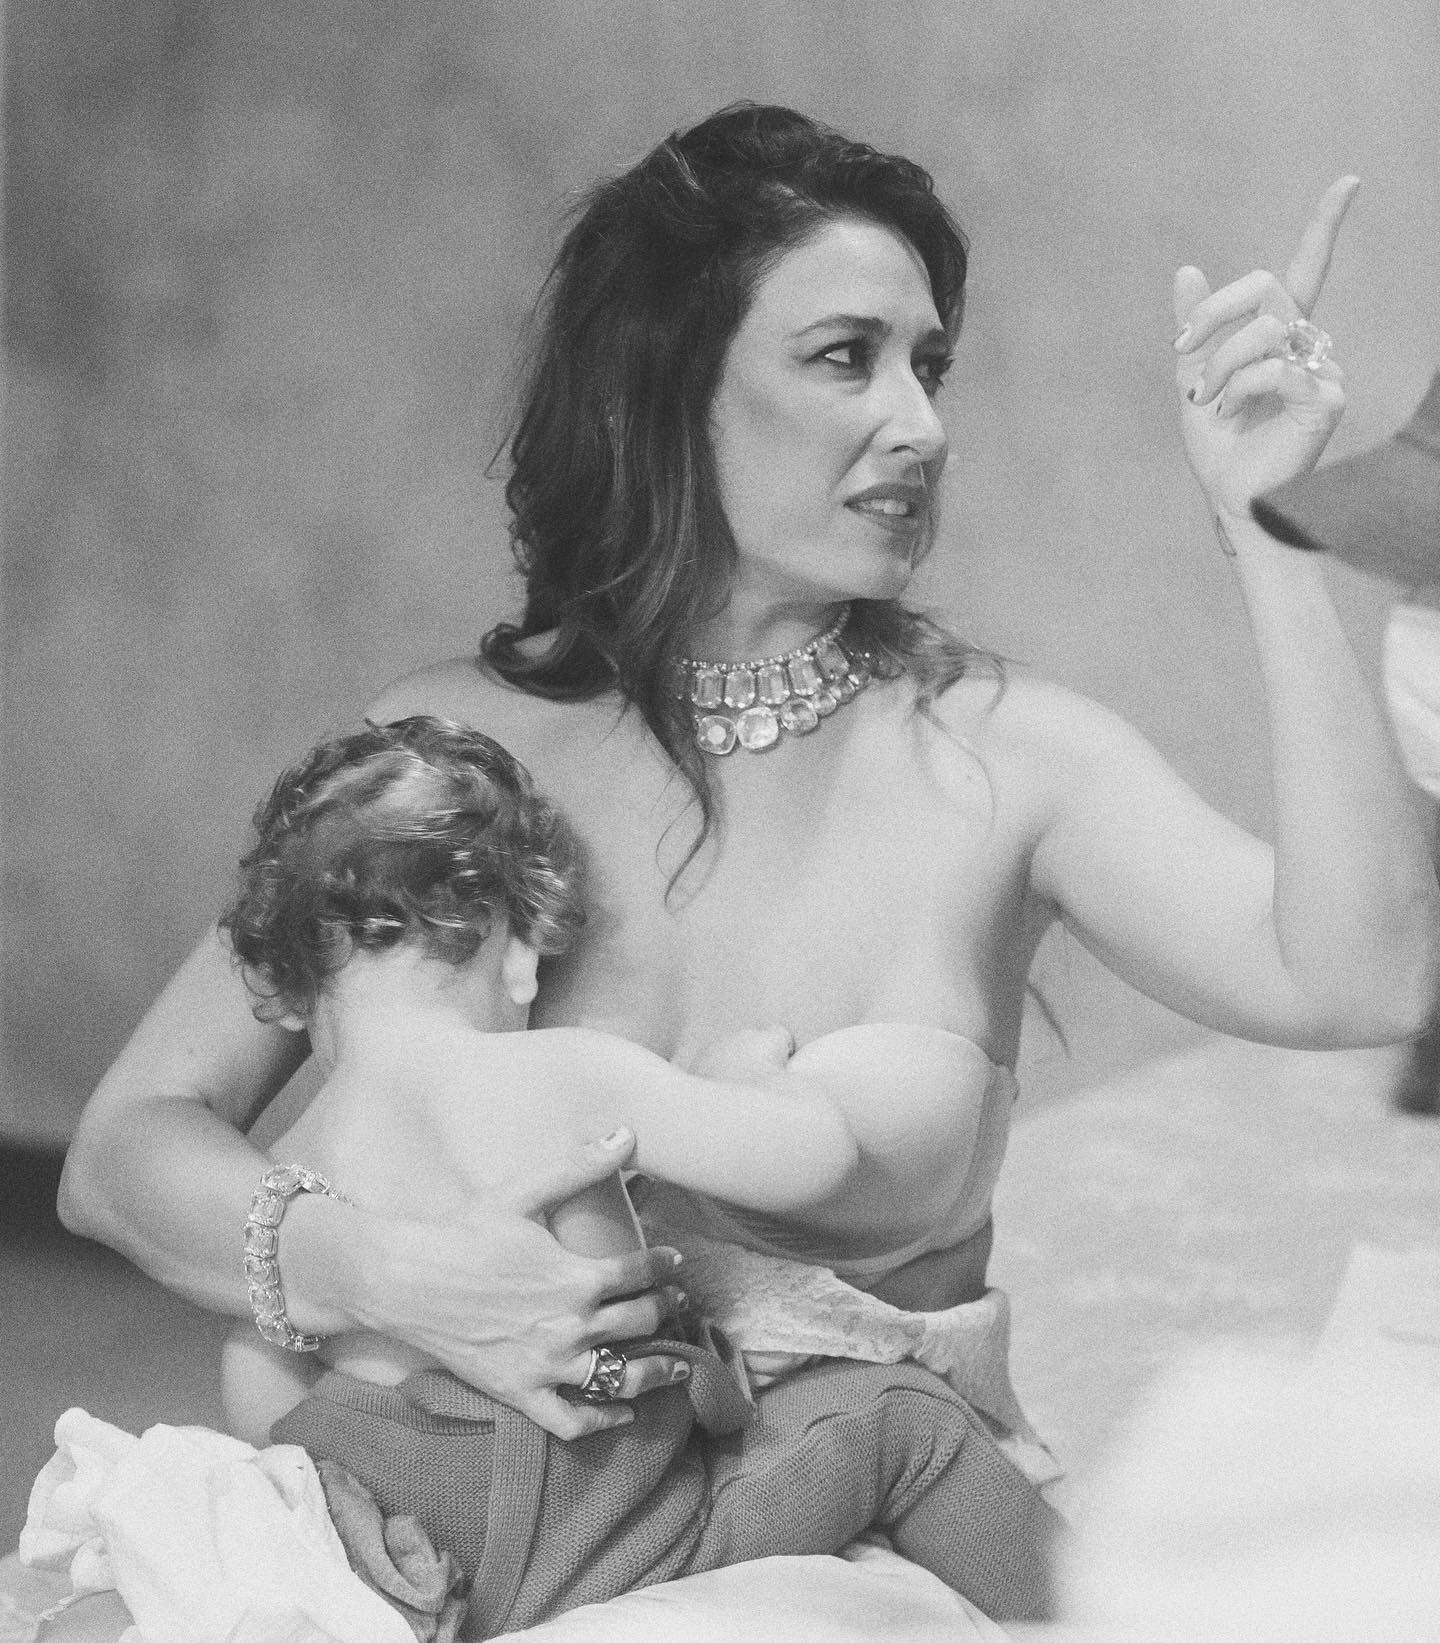 Giselle Itiê e Pedro Luna no clipe de Ocitocina, que reflete sobre maternidade (Foto: Reprodução / Instagram)